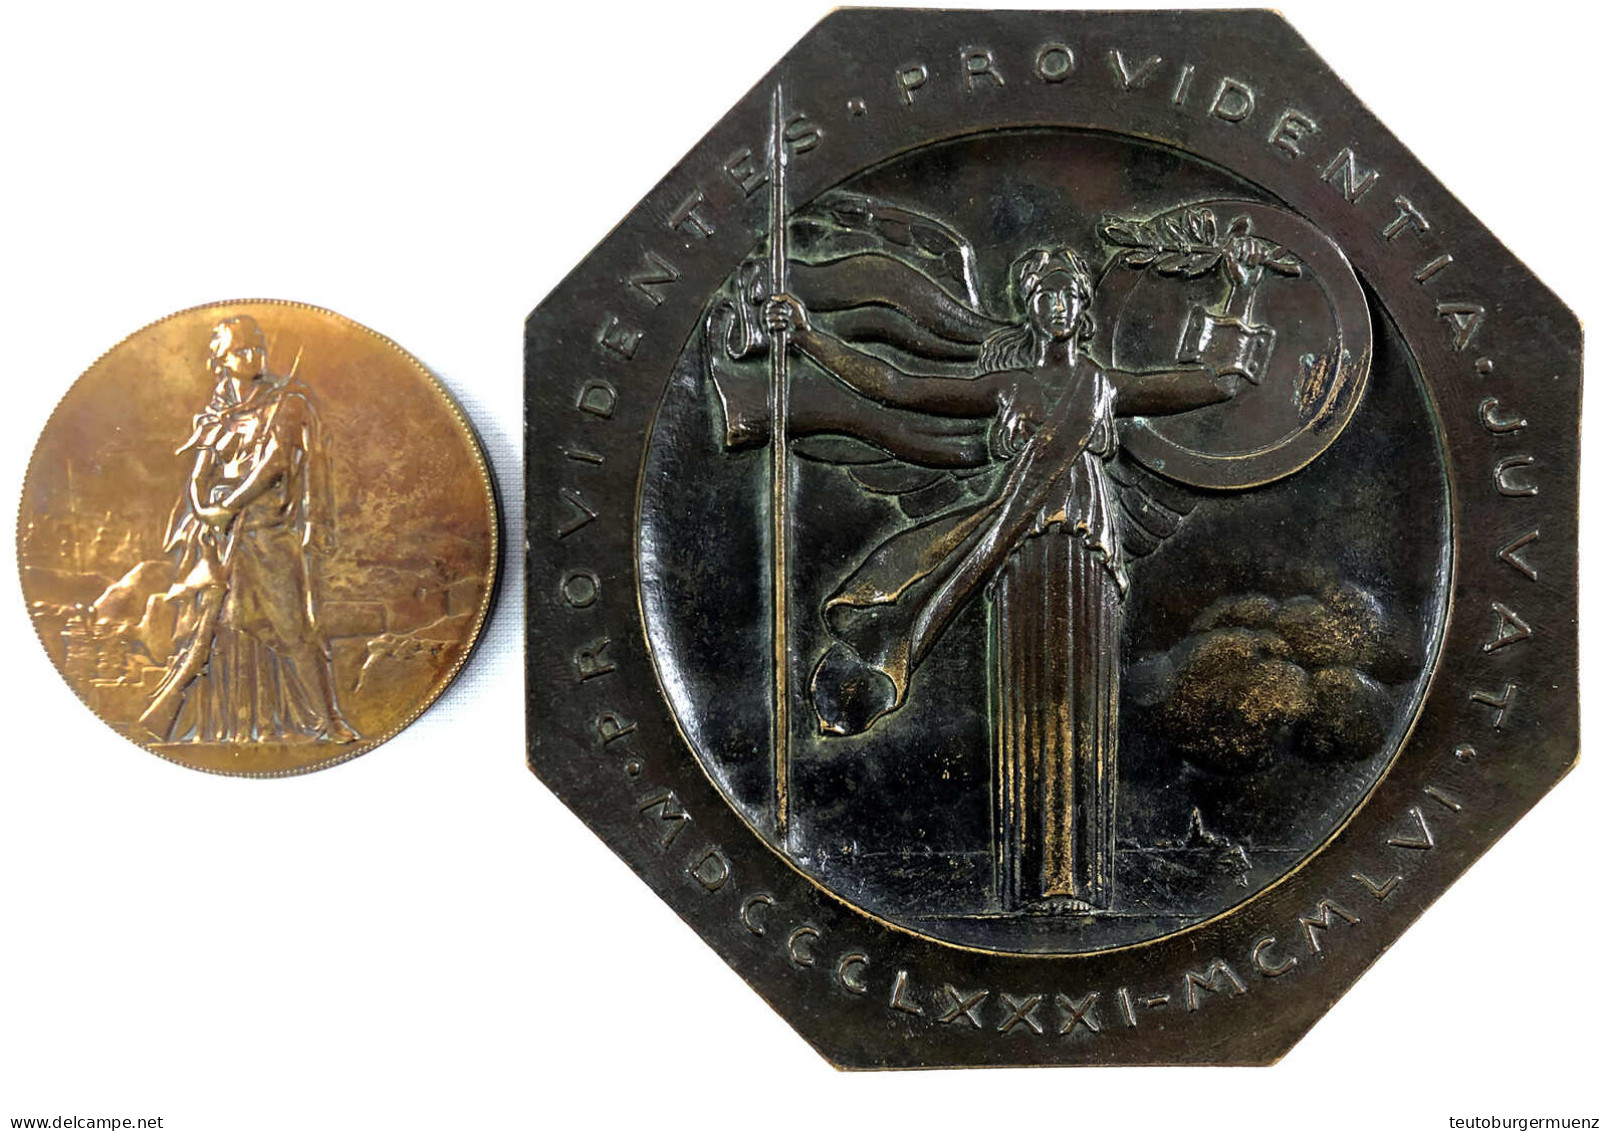 2 Stück: Große Achteckige Bronzeplakette 1956 Von Turin (158 Mm), Bronzemedaille 1871 A.d. Belagerung Von Paris (73 Mm). - Collections